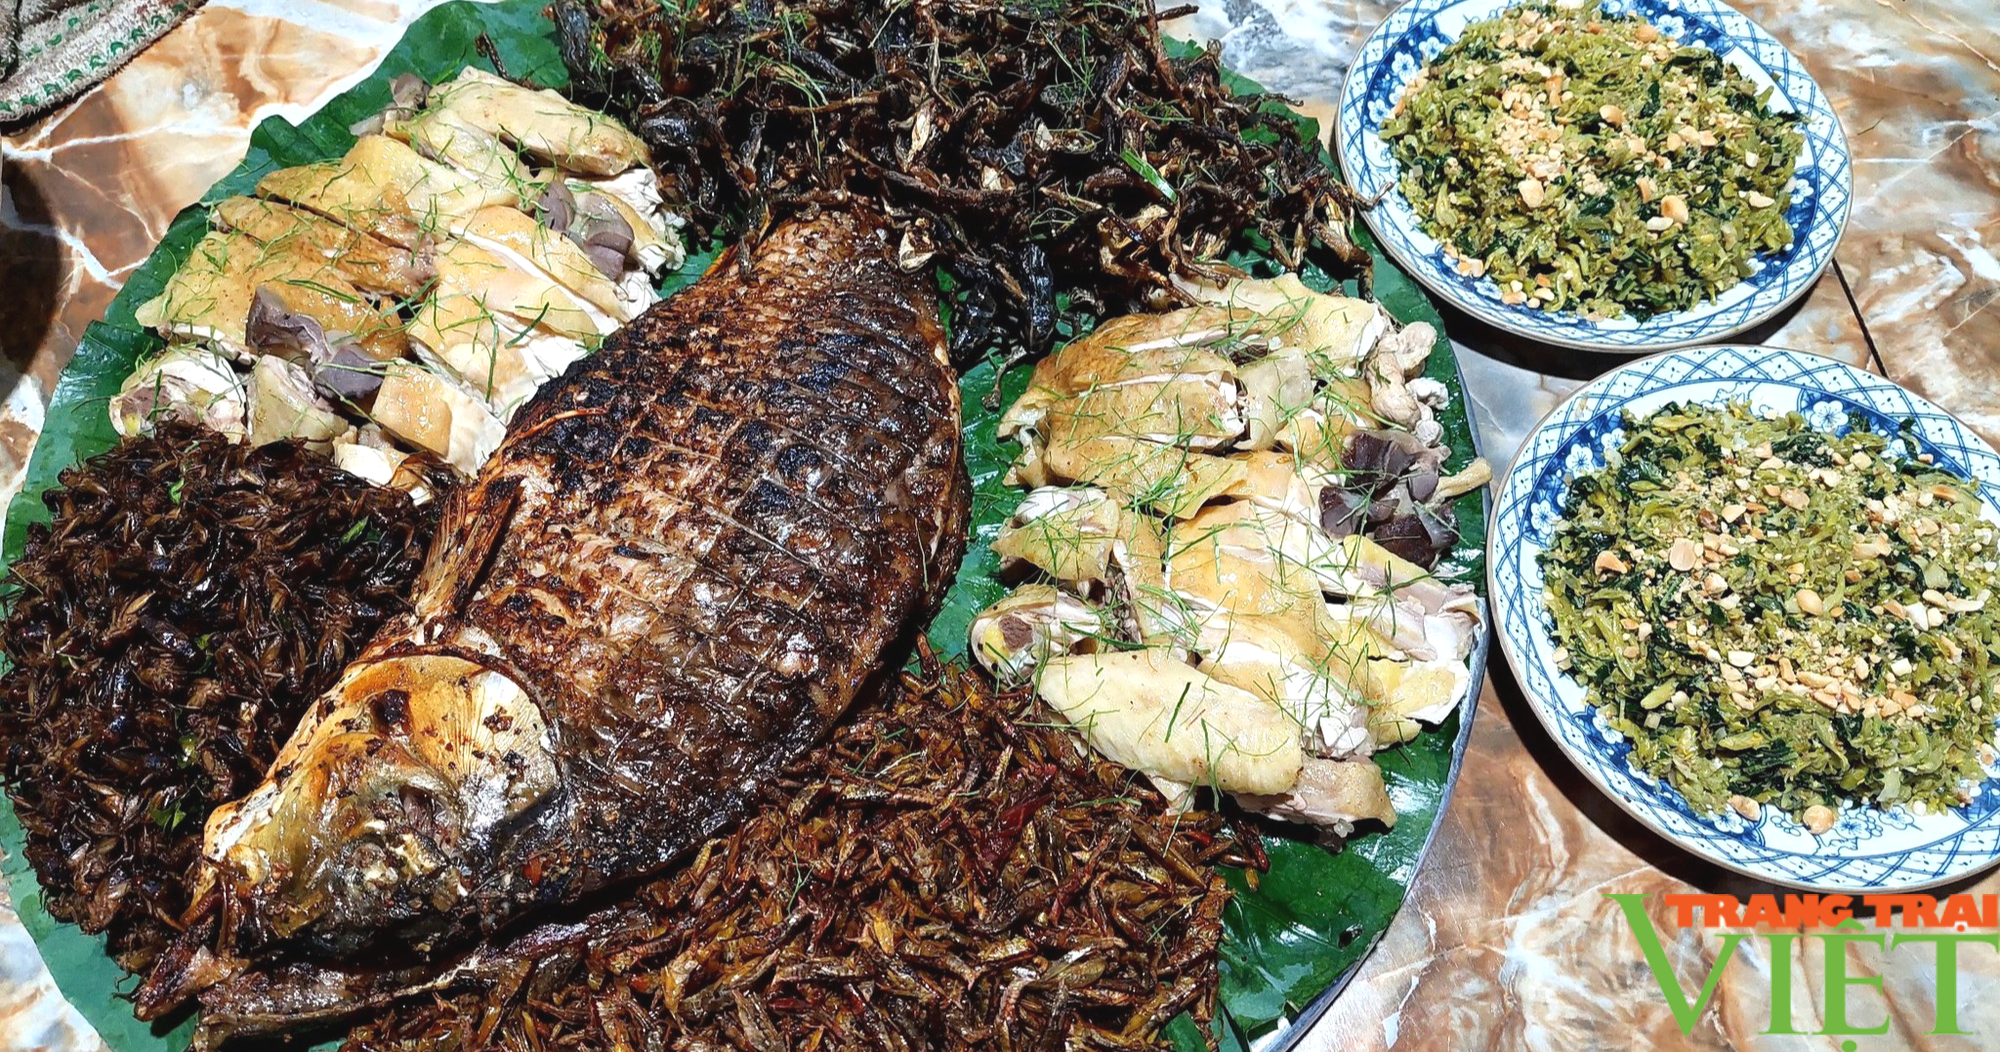 Du lịch nông nghiệp: Nông dân làm giàu từ dịch vụ câu cá kết hợp ẩm thực dân tộc (Bài 2) - Ảnh 6.